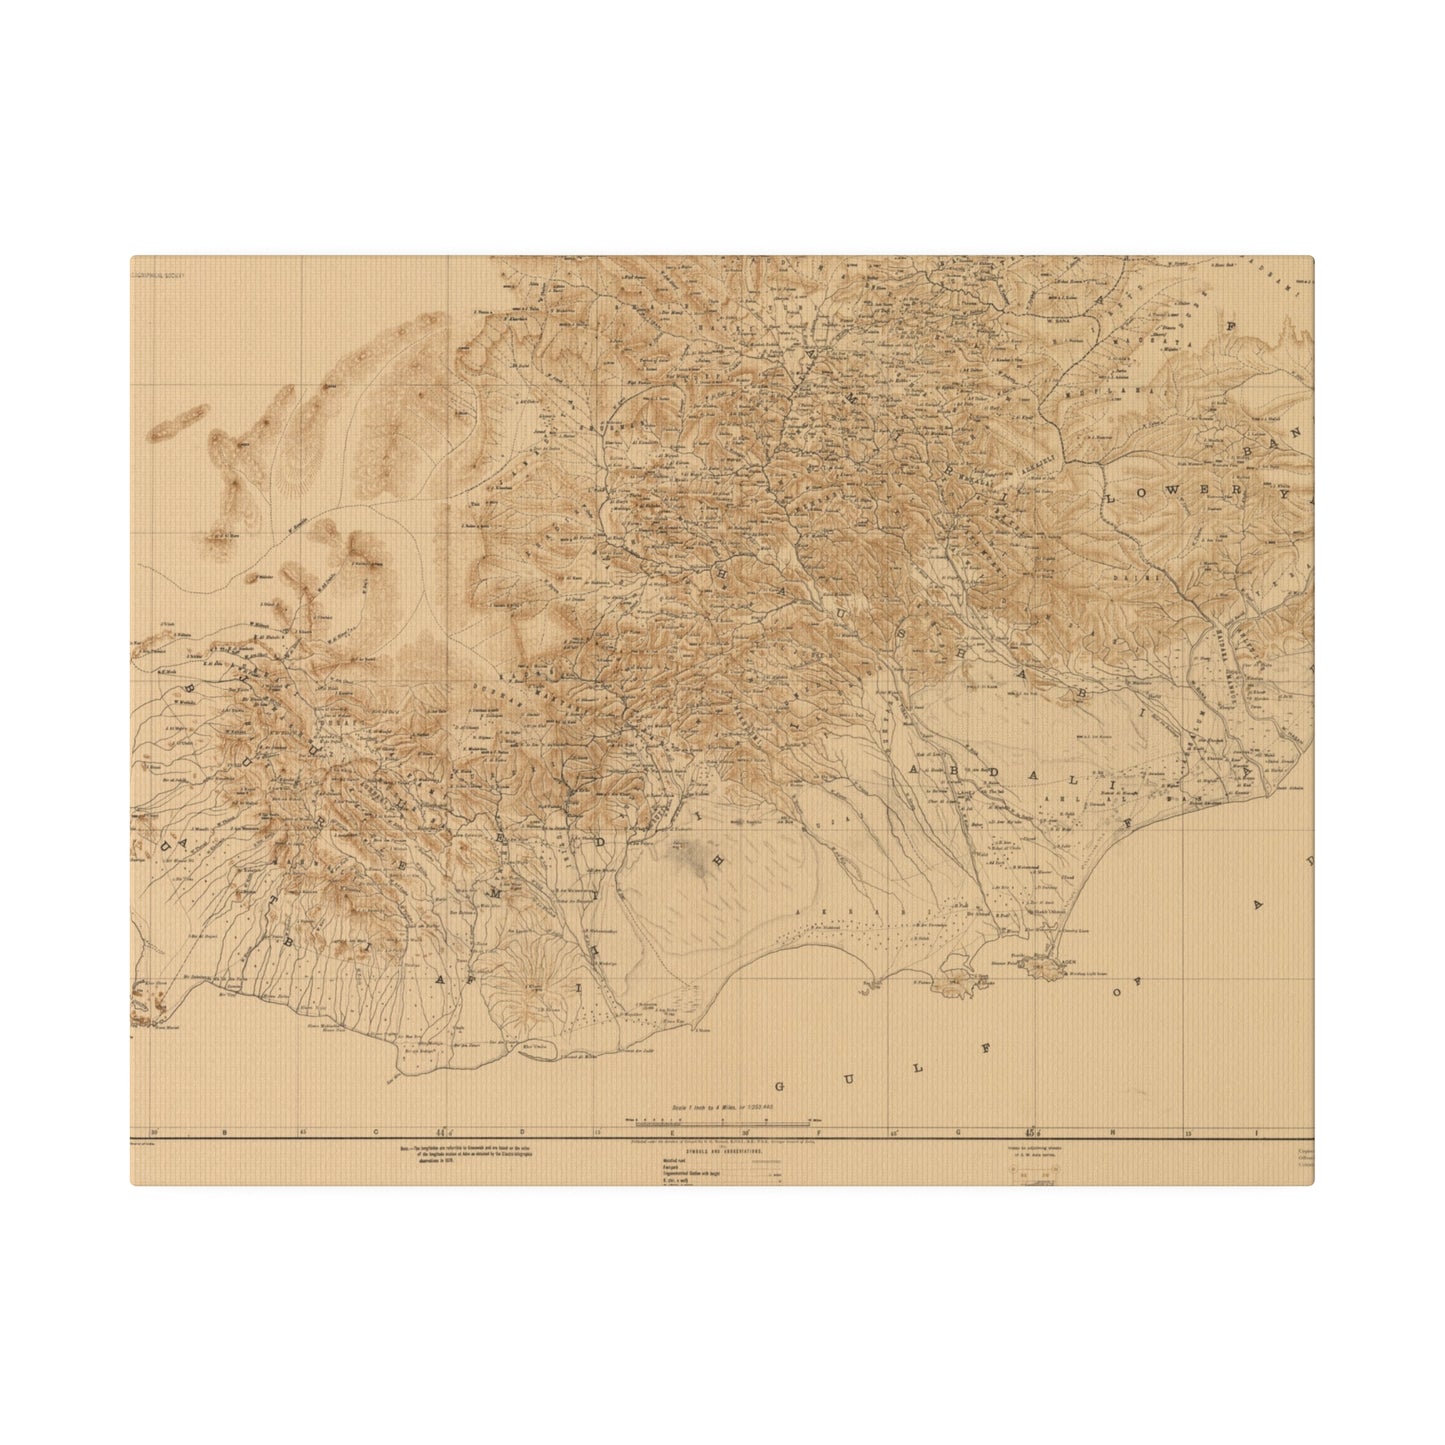 Aden Protectorate, Arabian Peninsula 1914